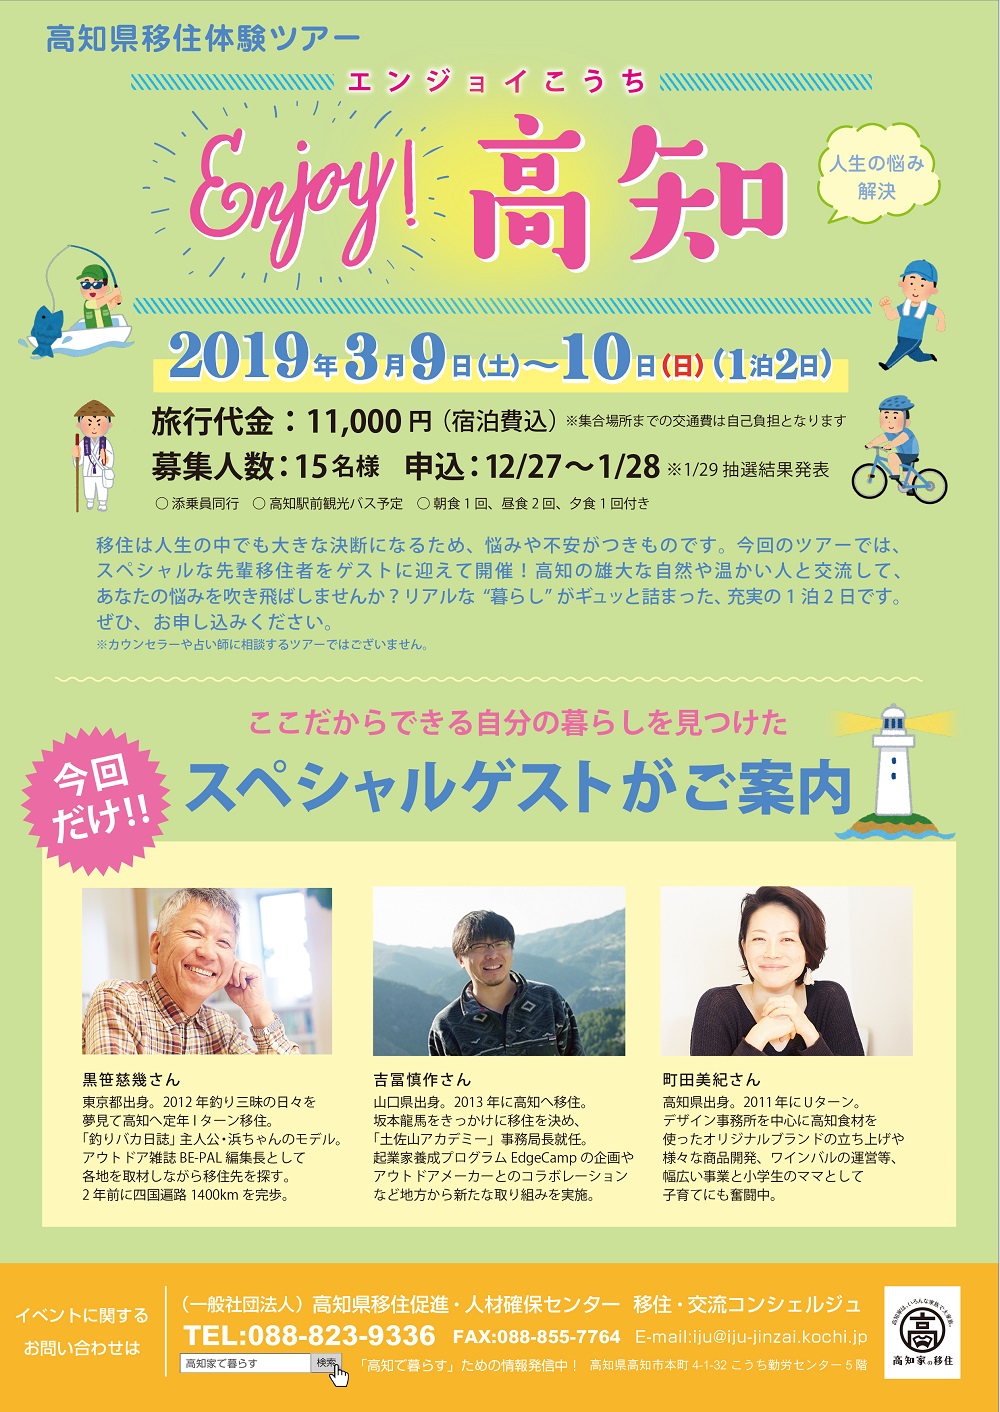 移住体験ツアー『Enjoy Kochi～人生の悩み解決～』 | 移住関連イベント情報